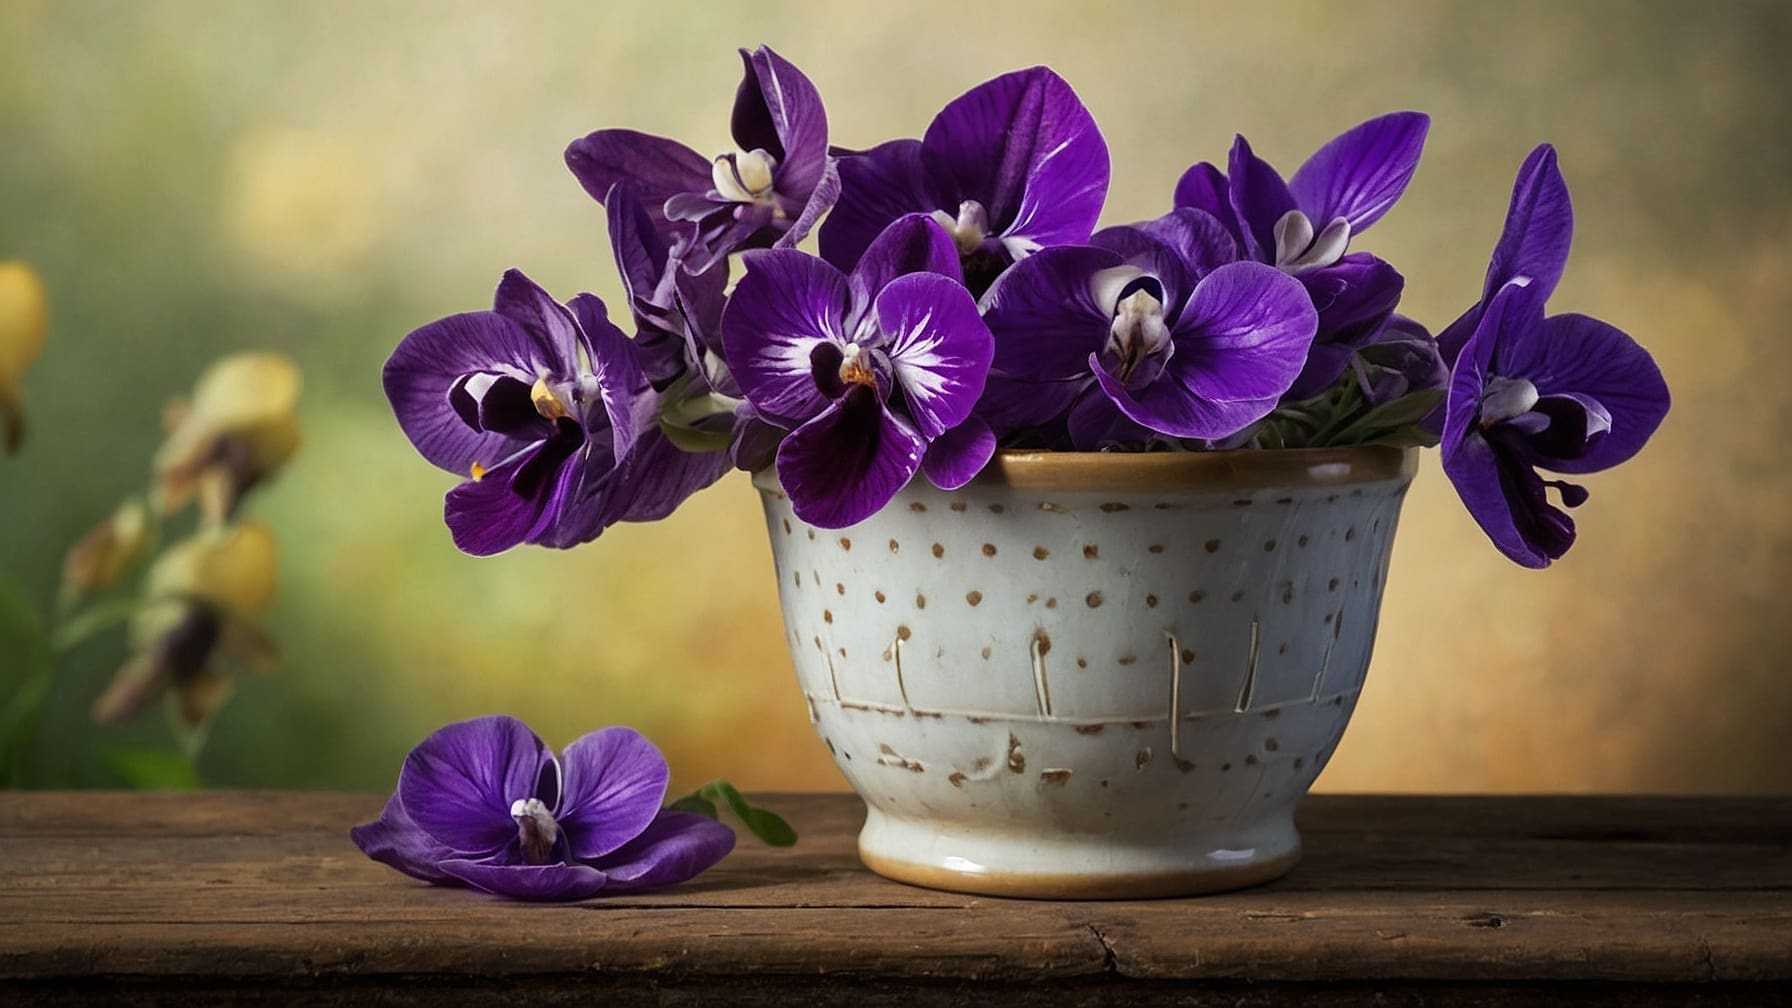 Coltivare violette in primavera è facile e gratificante. Scopri come seminare, annaffiare e curare queste piante per una fioritura vivace